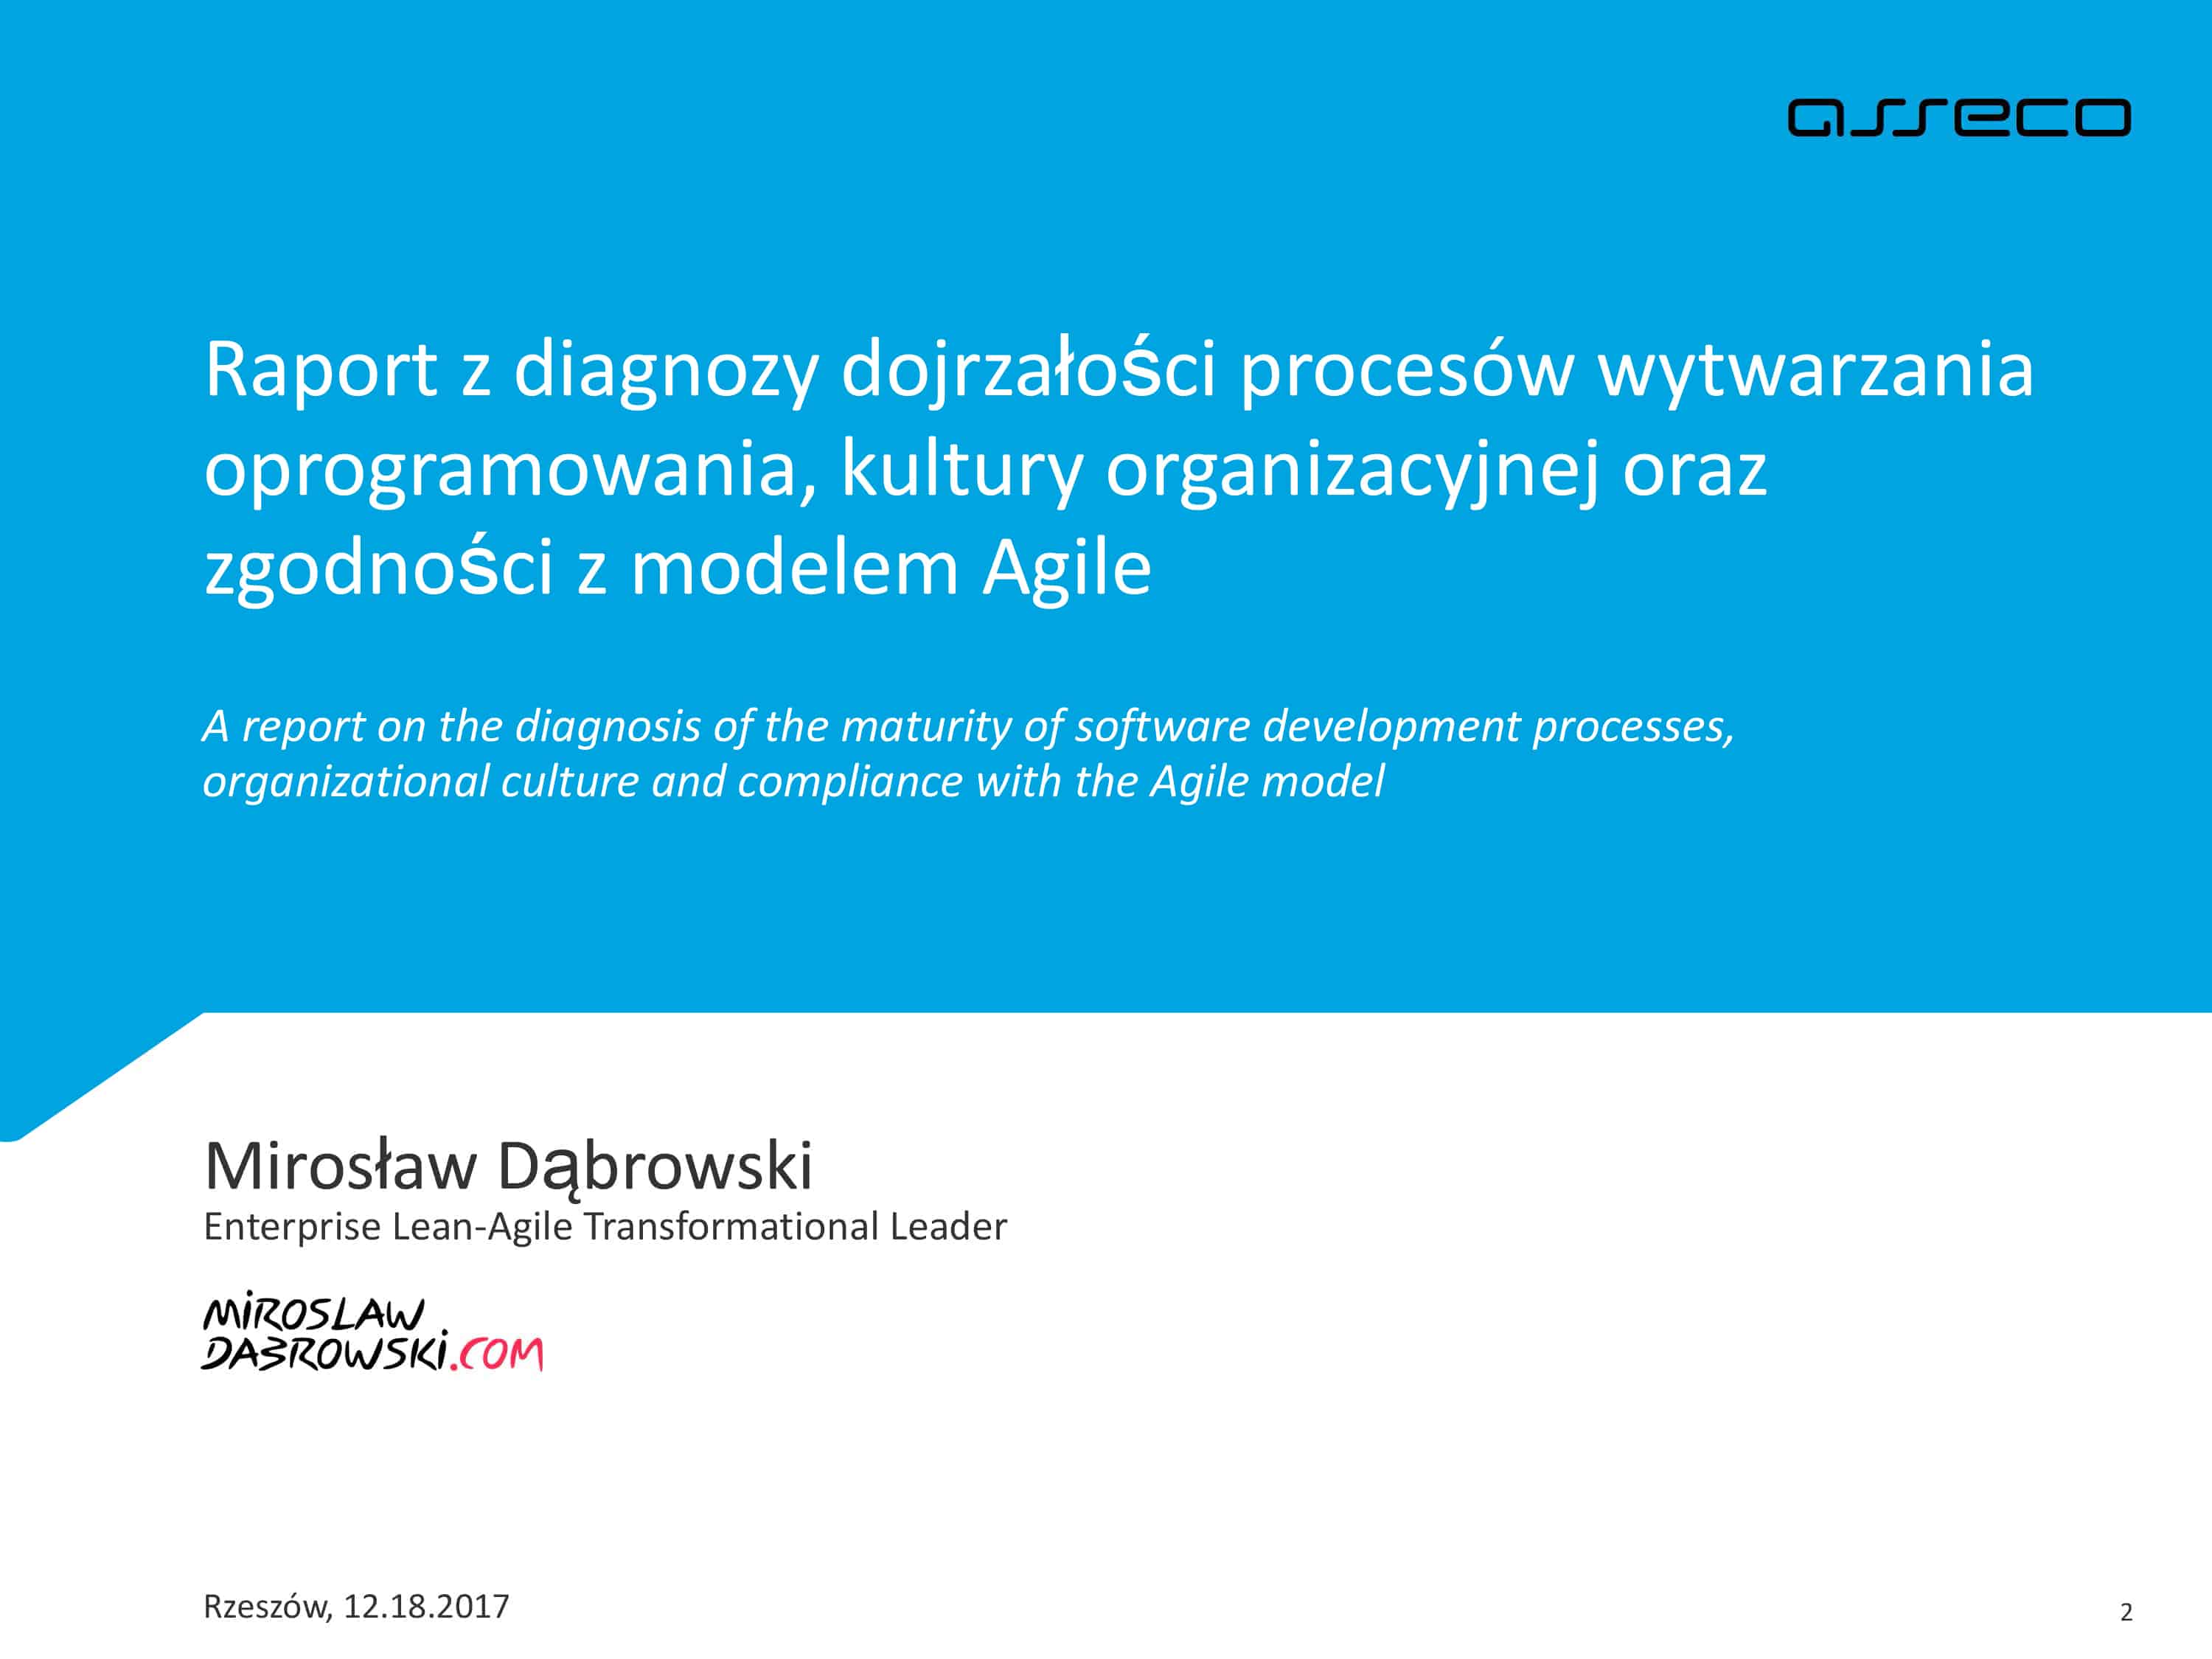 Assoco Poland S.A. Agile Maturity Report